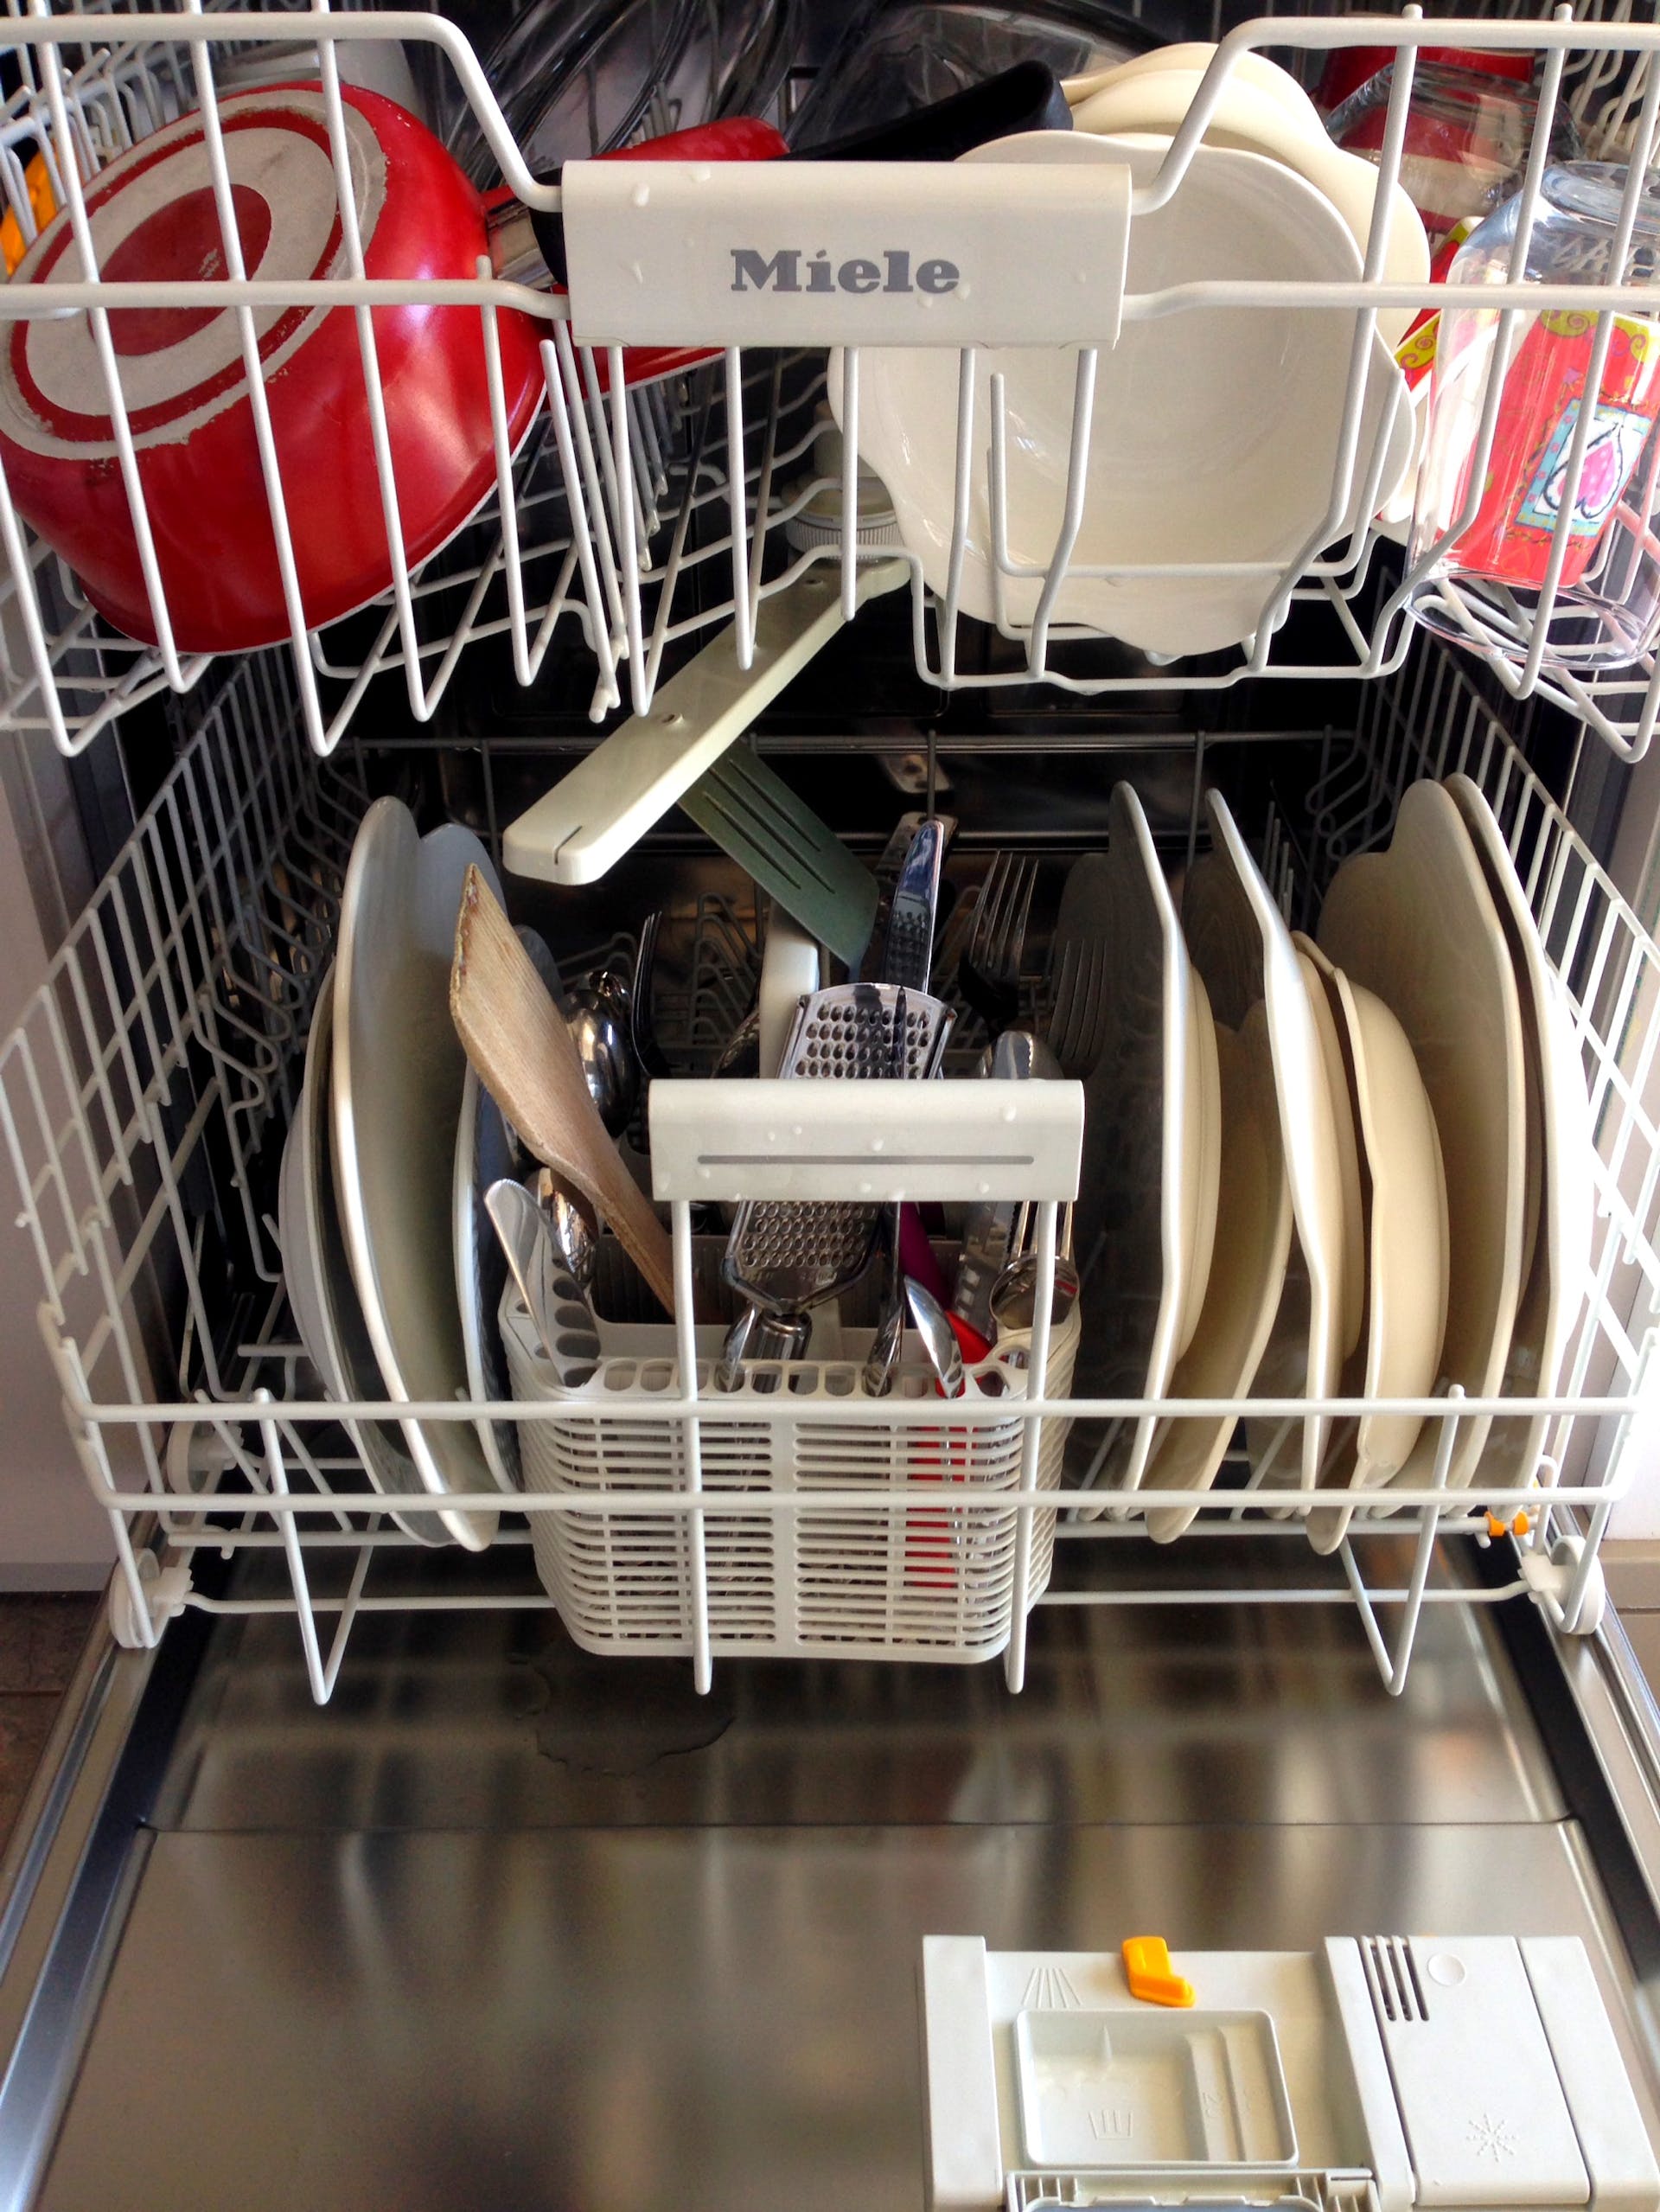 Loaded dishwasher | Source: Pexels